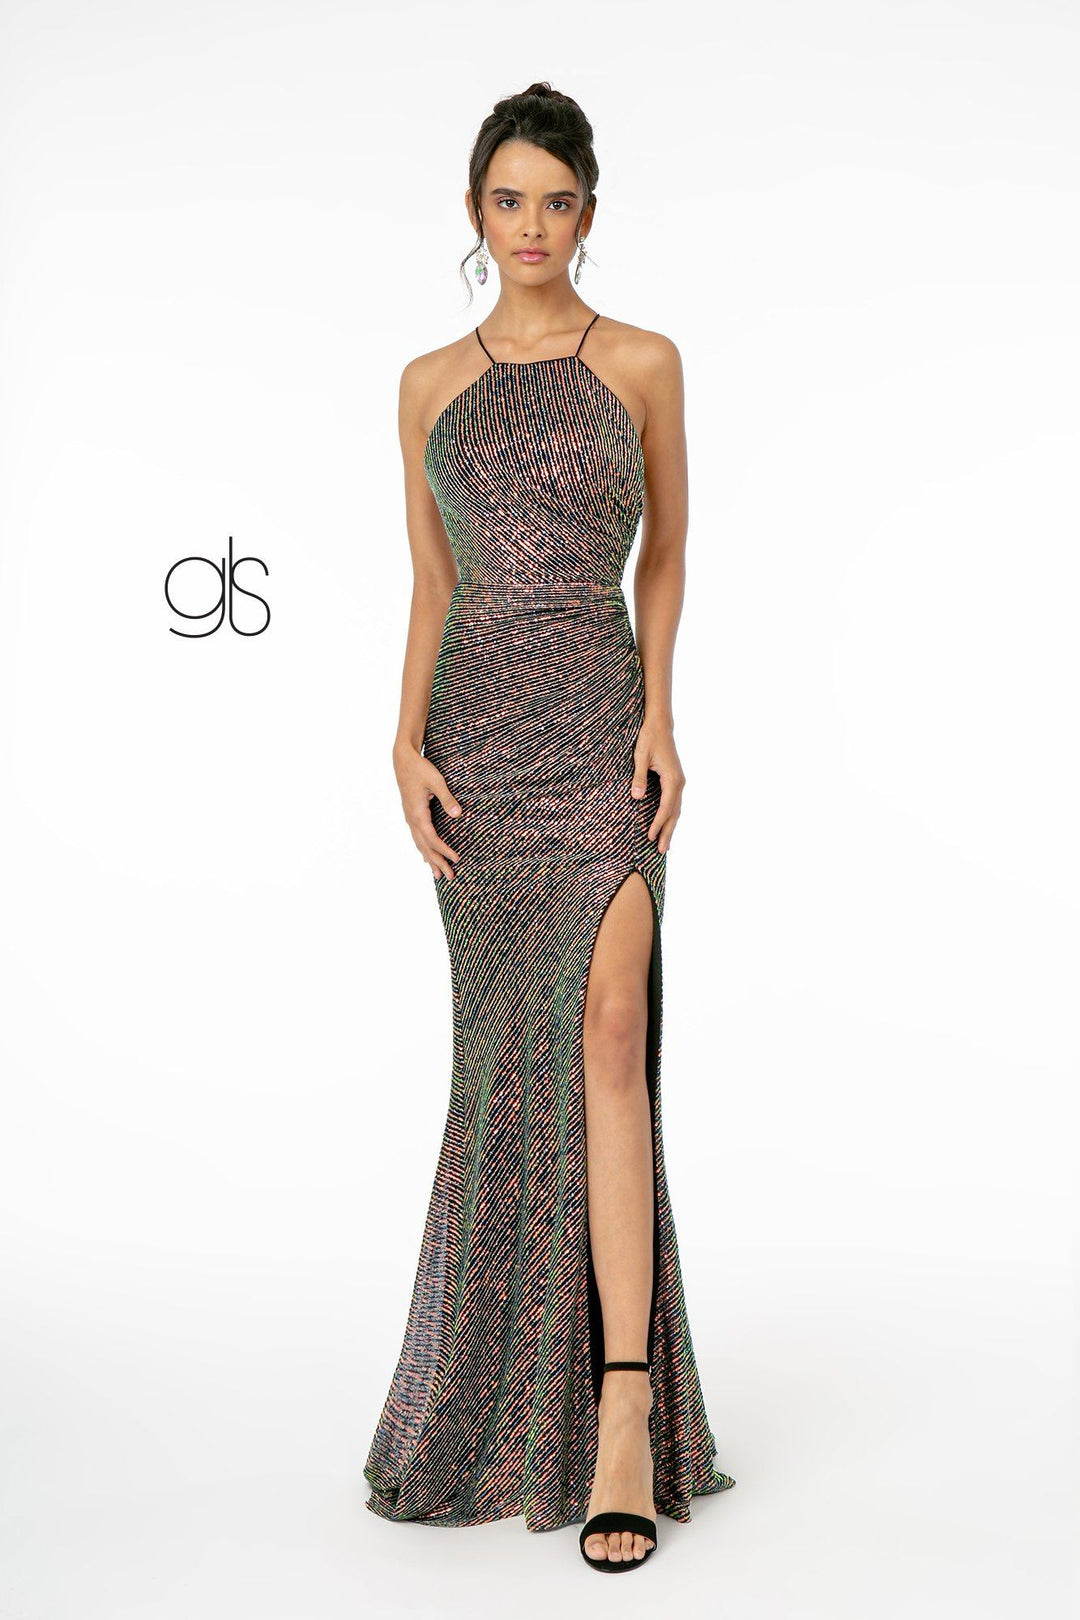 Long Iridescent Sequin Dress with Side Slit by Elizabeth K GL1812